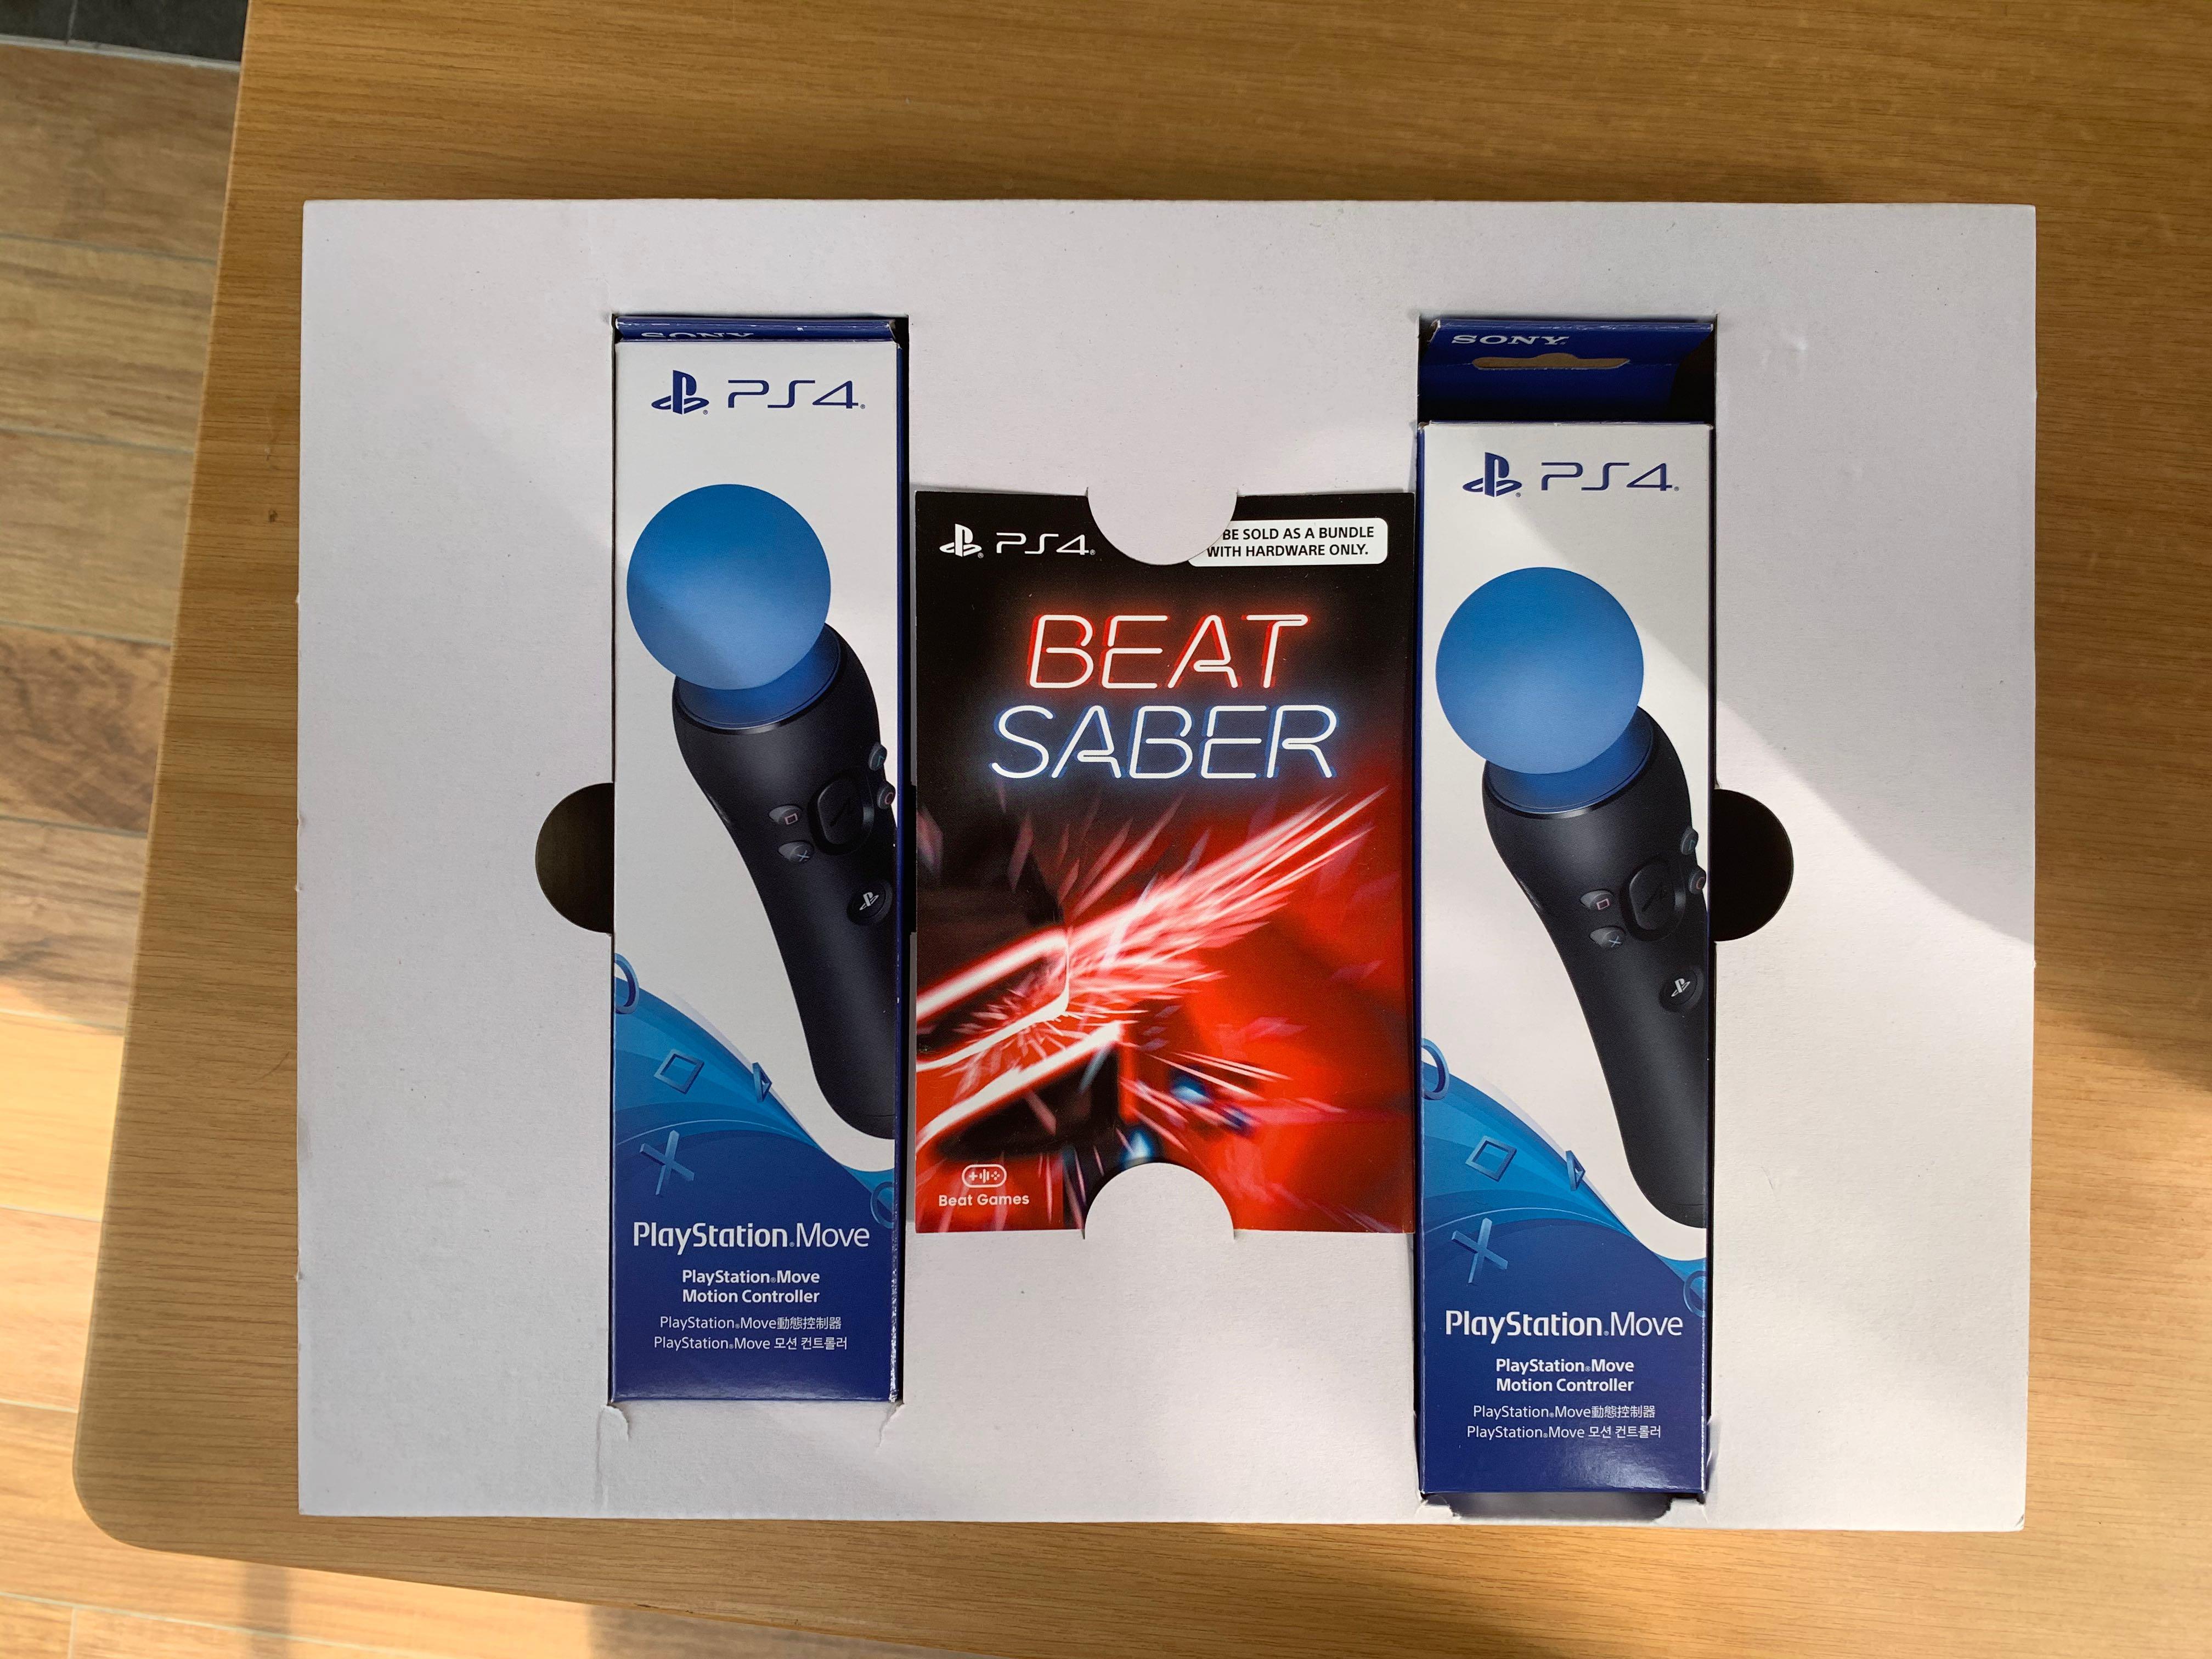 Beats saber ps4. Beat saber ps4 купить диск. Beat saber na PS VR. Beat saber купить ps3. Beat saber VR ps4 купить диск.